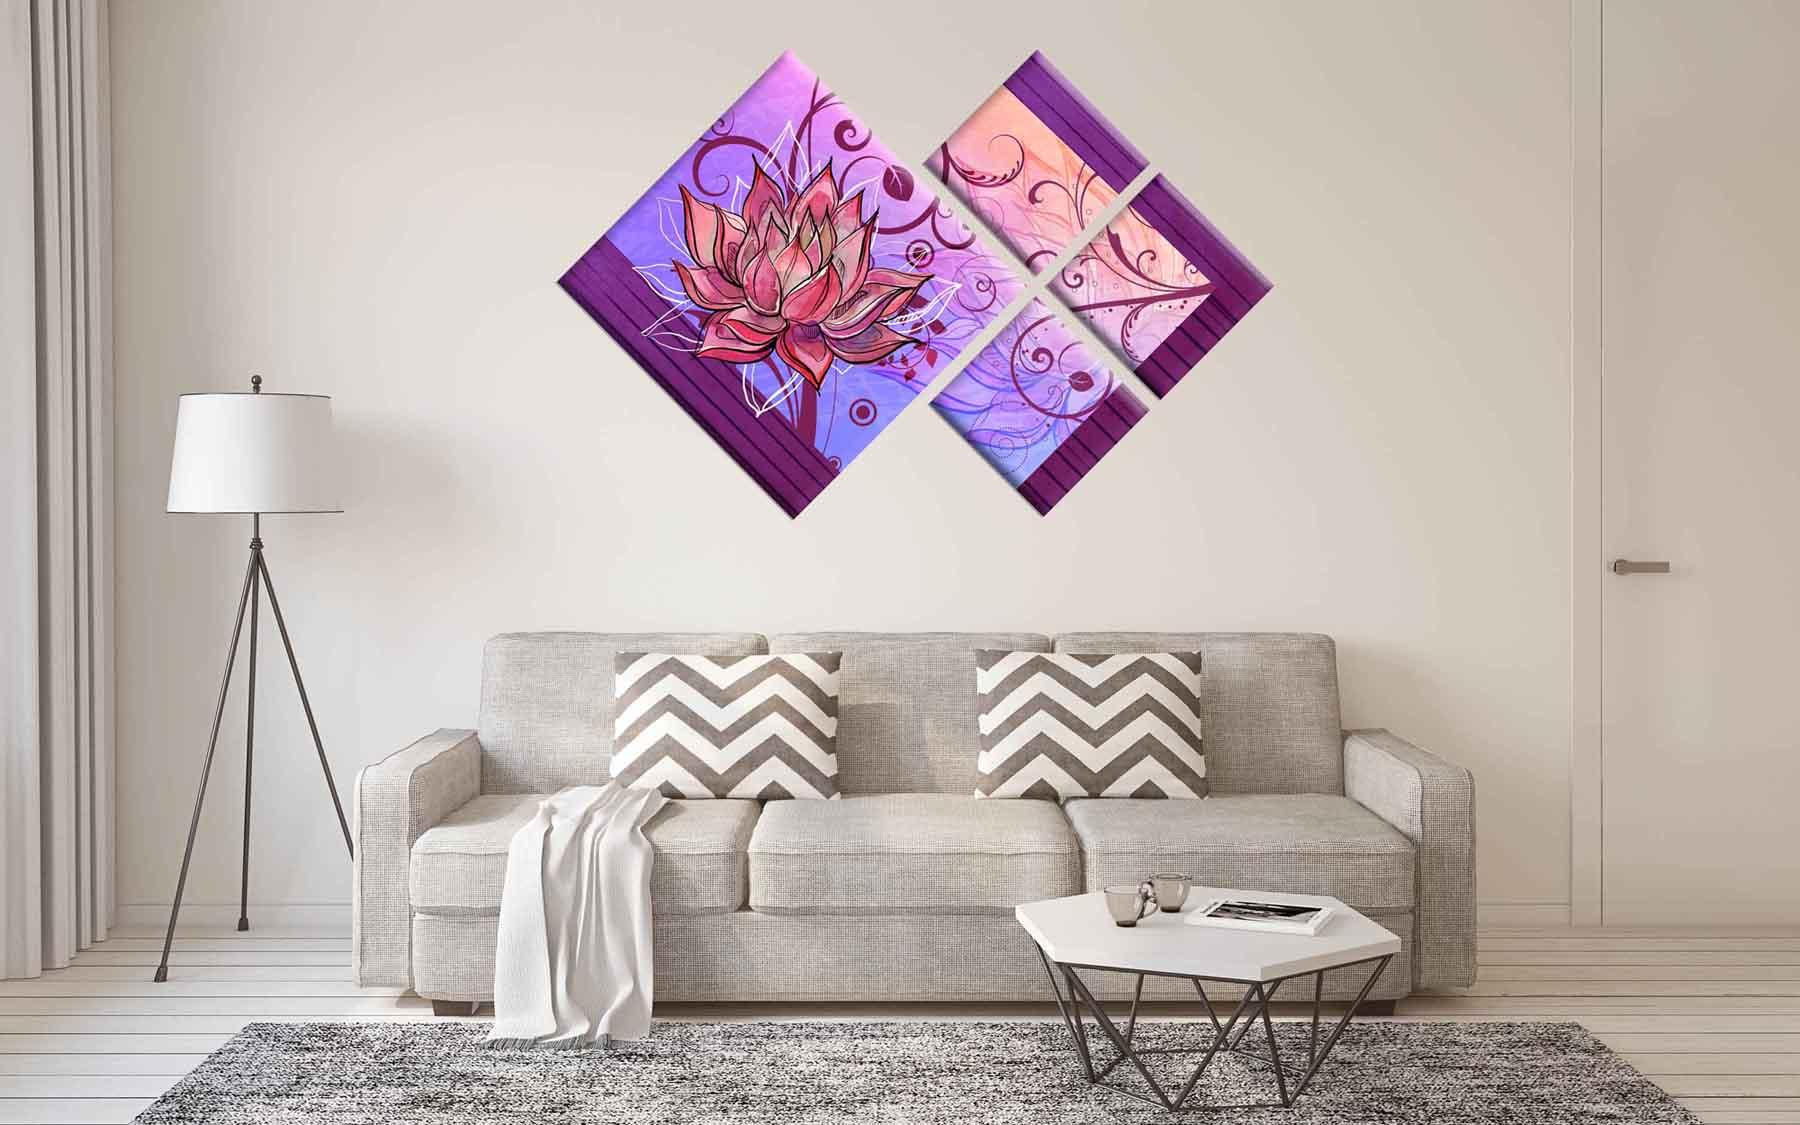 Modulinis paveikslėlis - subtili gėlė purpuriniame fone